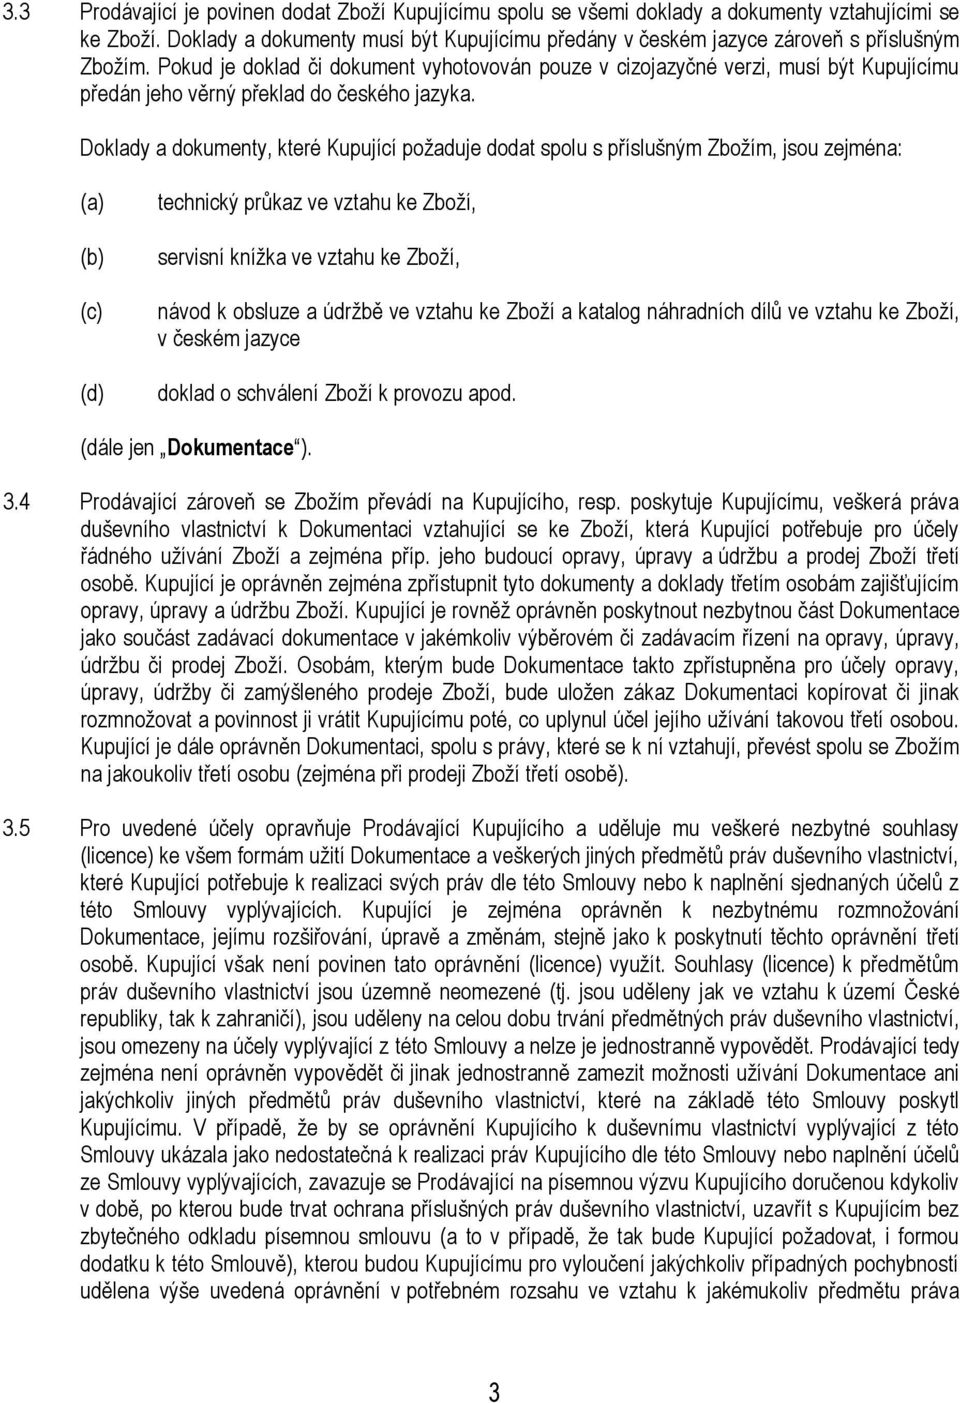 Pokud je doklad či dokument vyhotovován pouze v cizojazyčné verzi, musí být Kupujícímu předán jeho věrný překlad do českého jazyka.